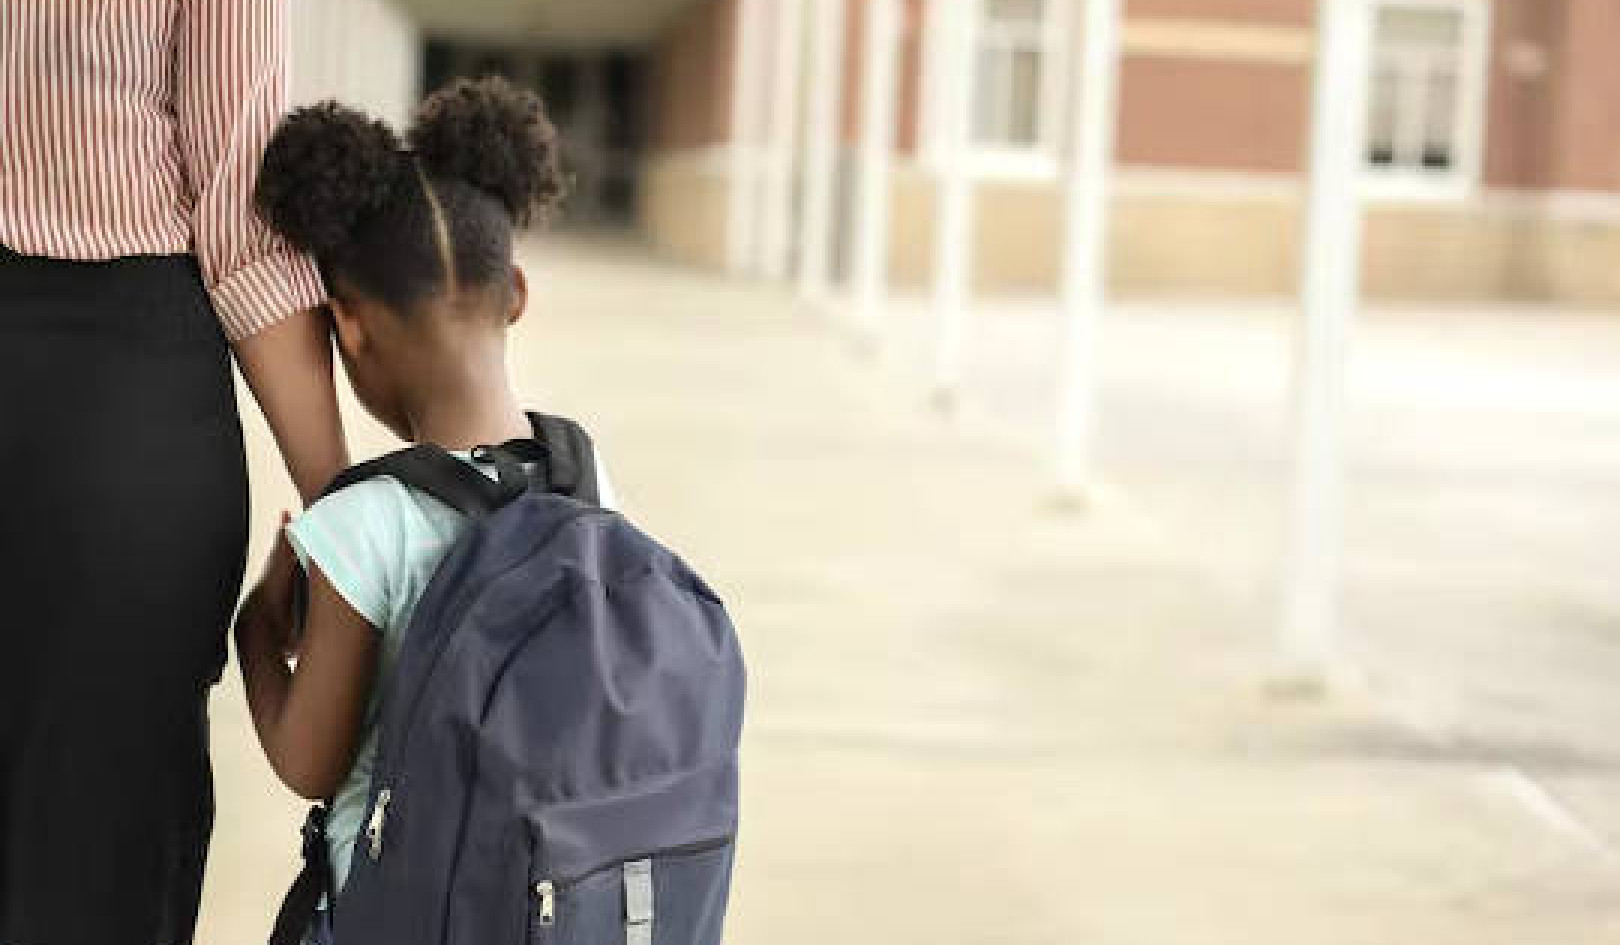 Đóng cửa là chuyện hoang đường: Làm thế nào để giải quyết nỗi đau sau vụ xả súng ở trường học